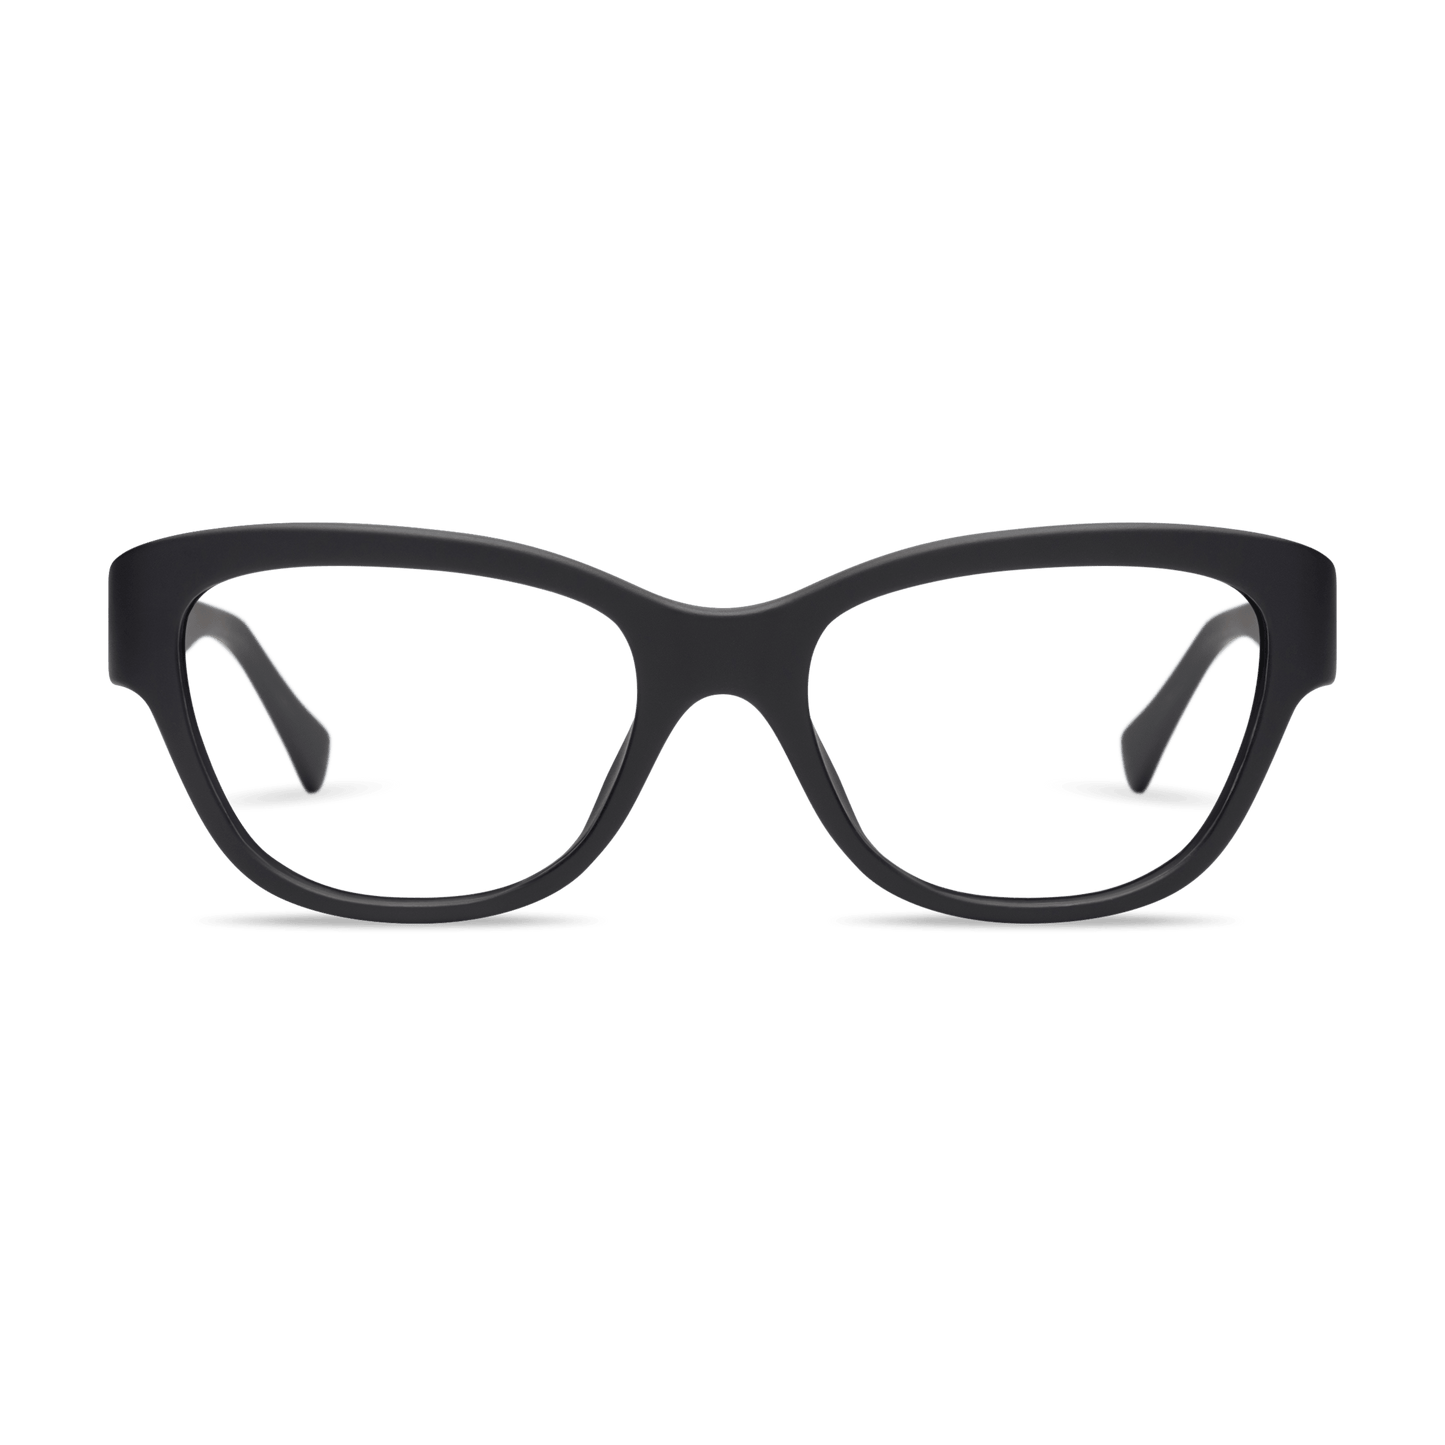 Milla Readers Eyeglasses LOOK OPTIC Black +1.00 